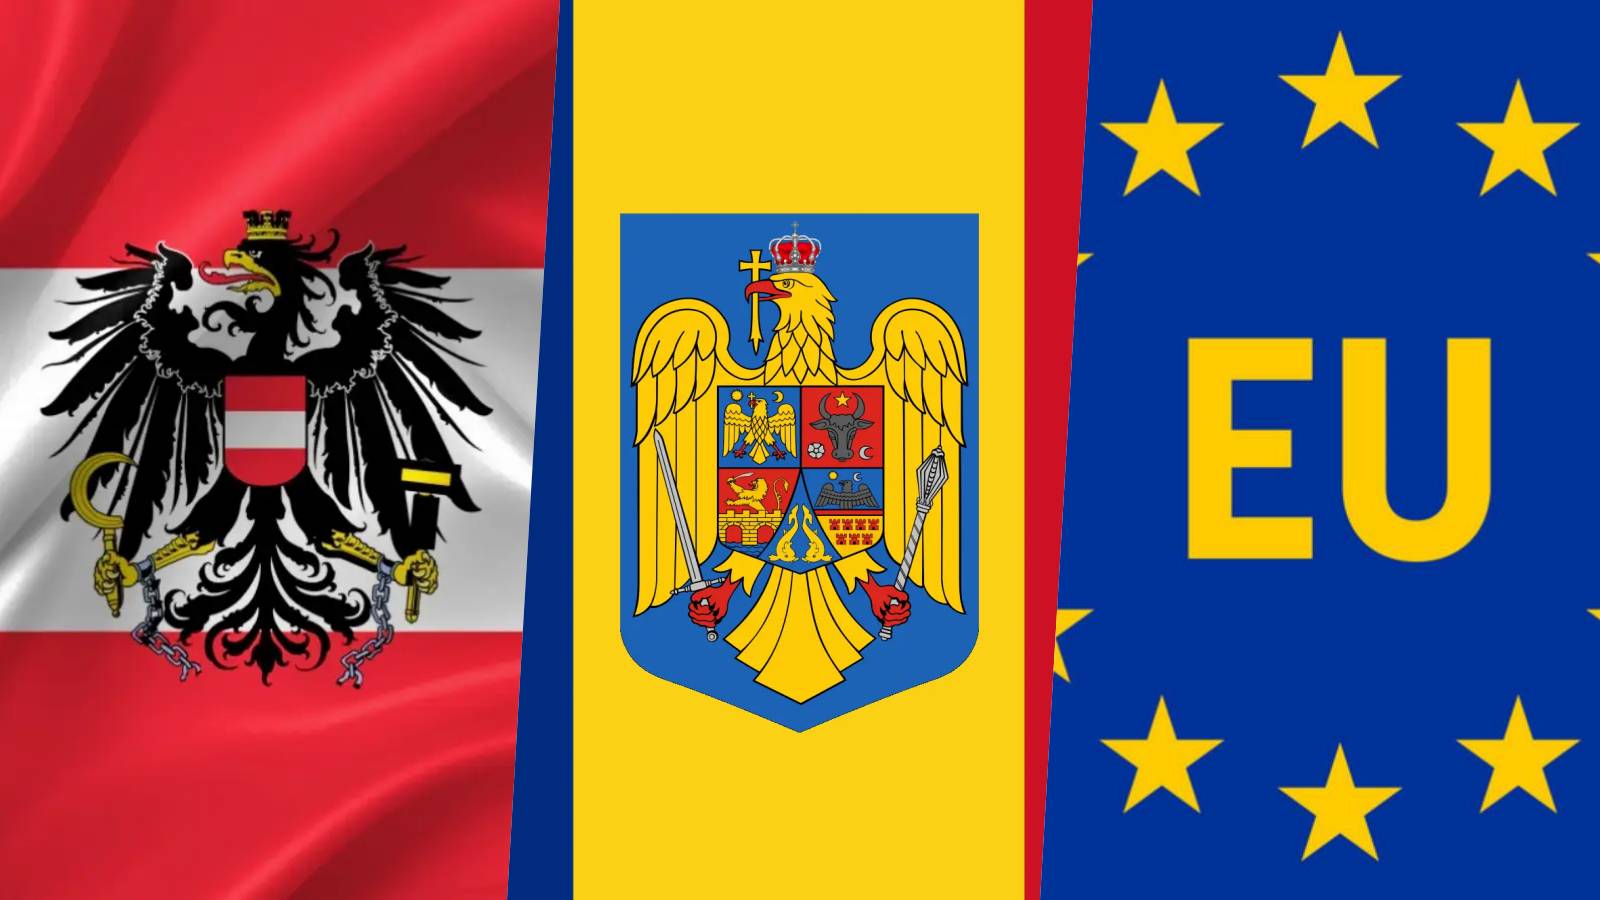 Austria Anuntul ULTIMA ORA Aderarea Romaniei Schengen LOVITURA Interiorul UE